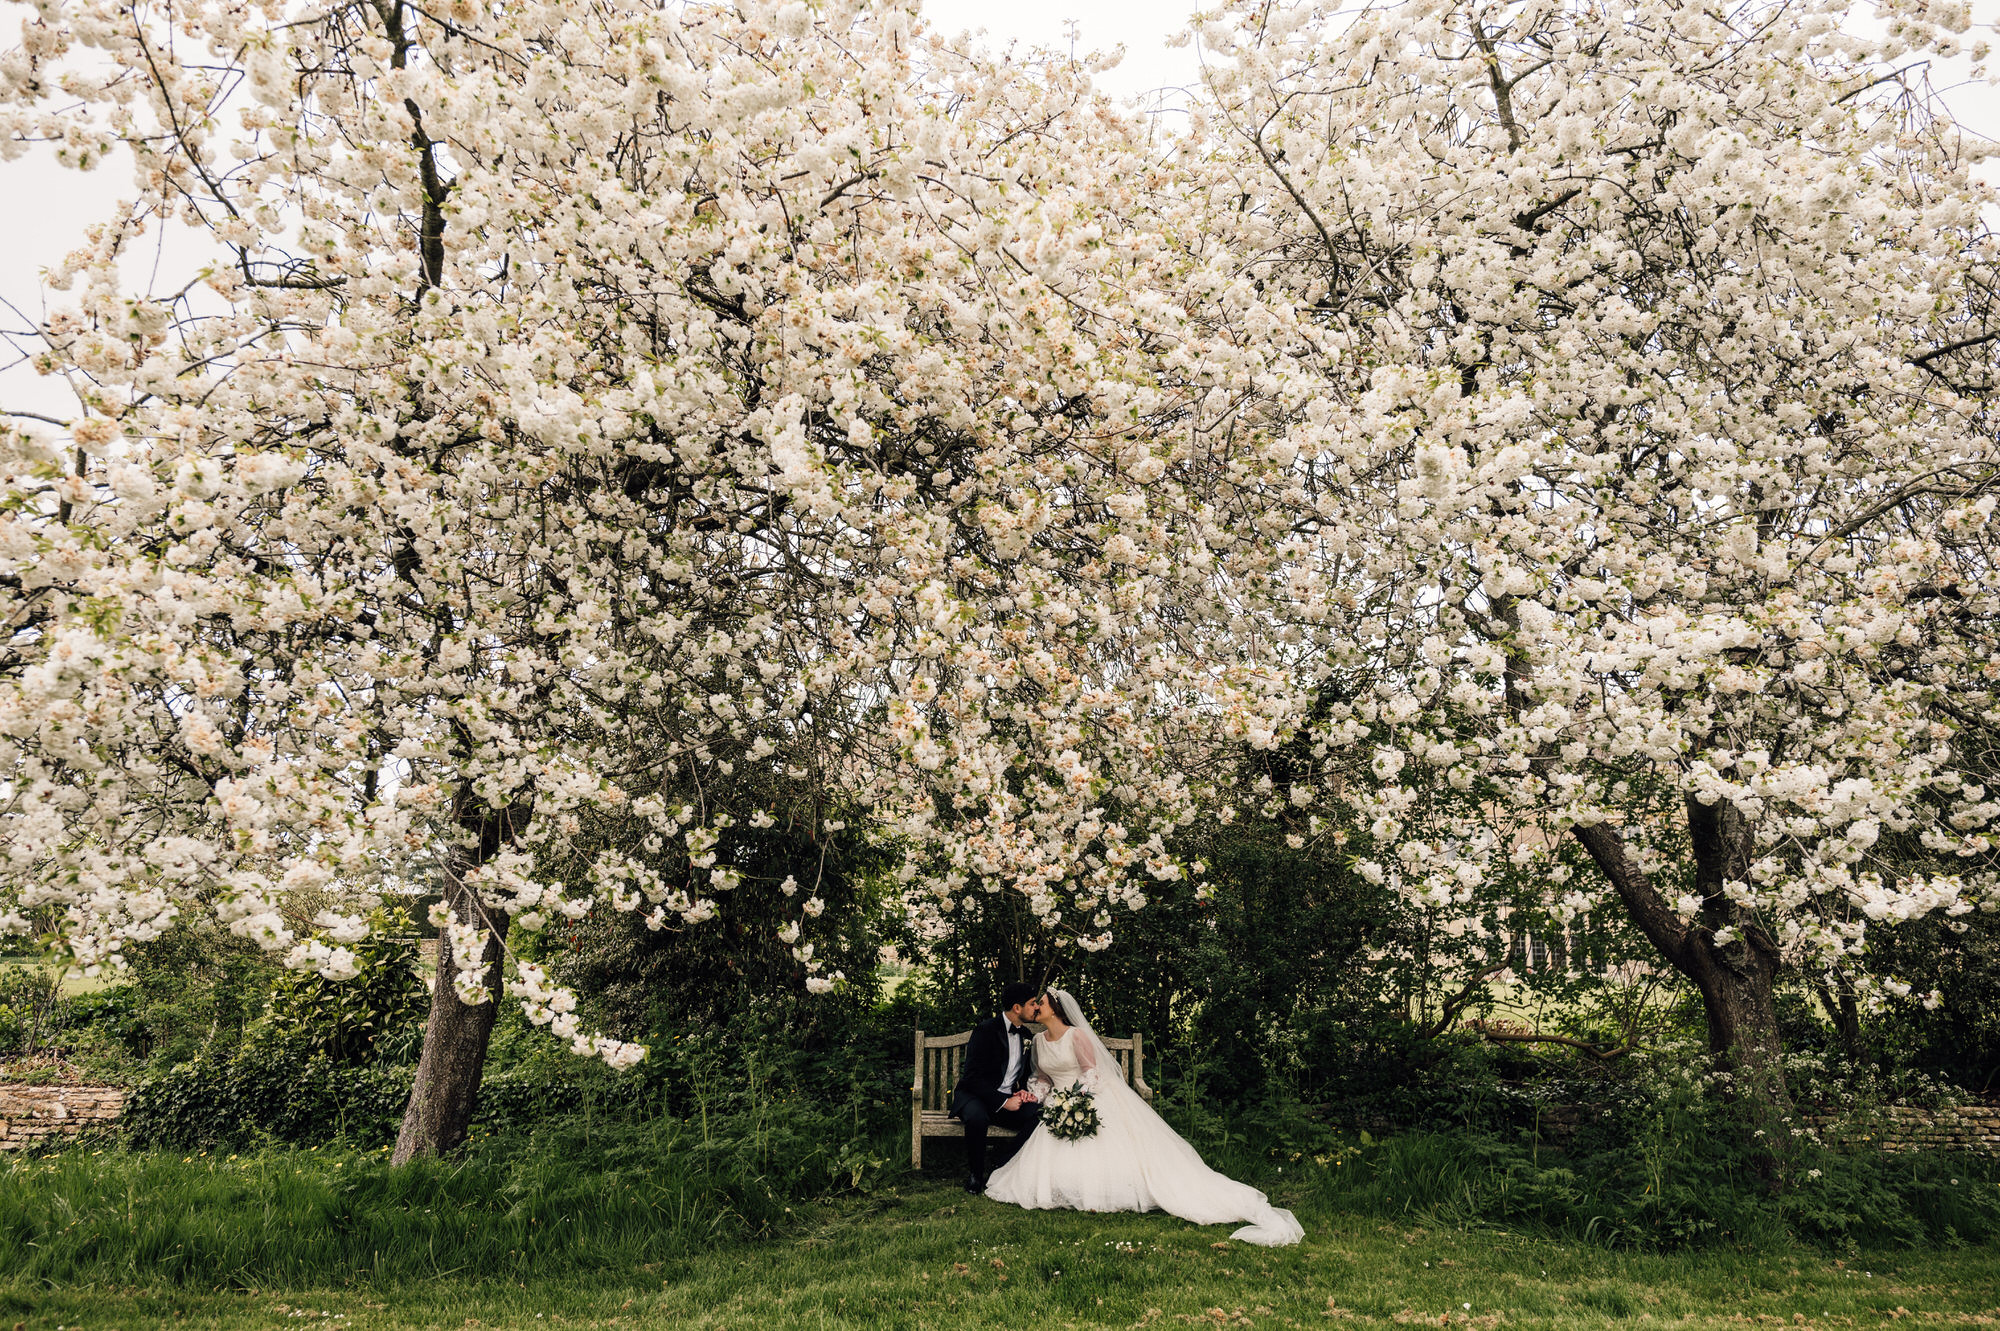 Whatley manor cotswold wedding photographer 15